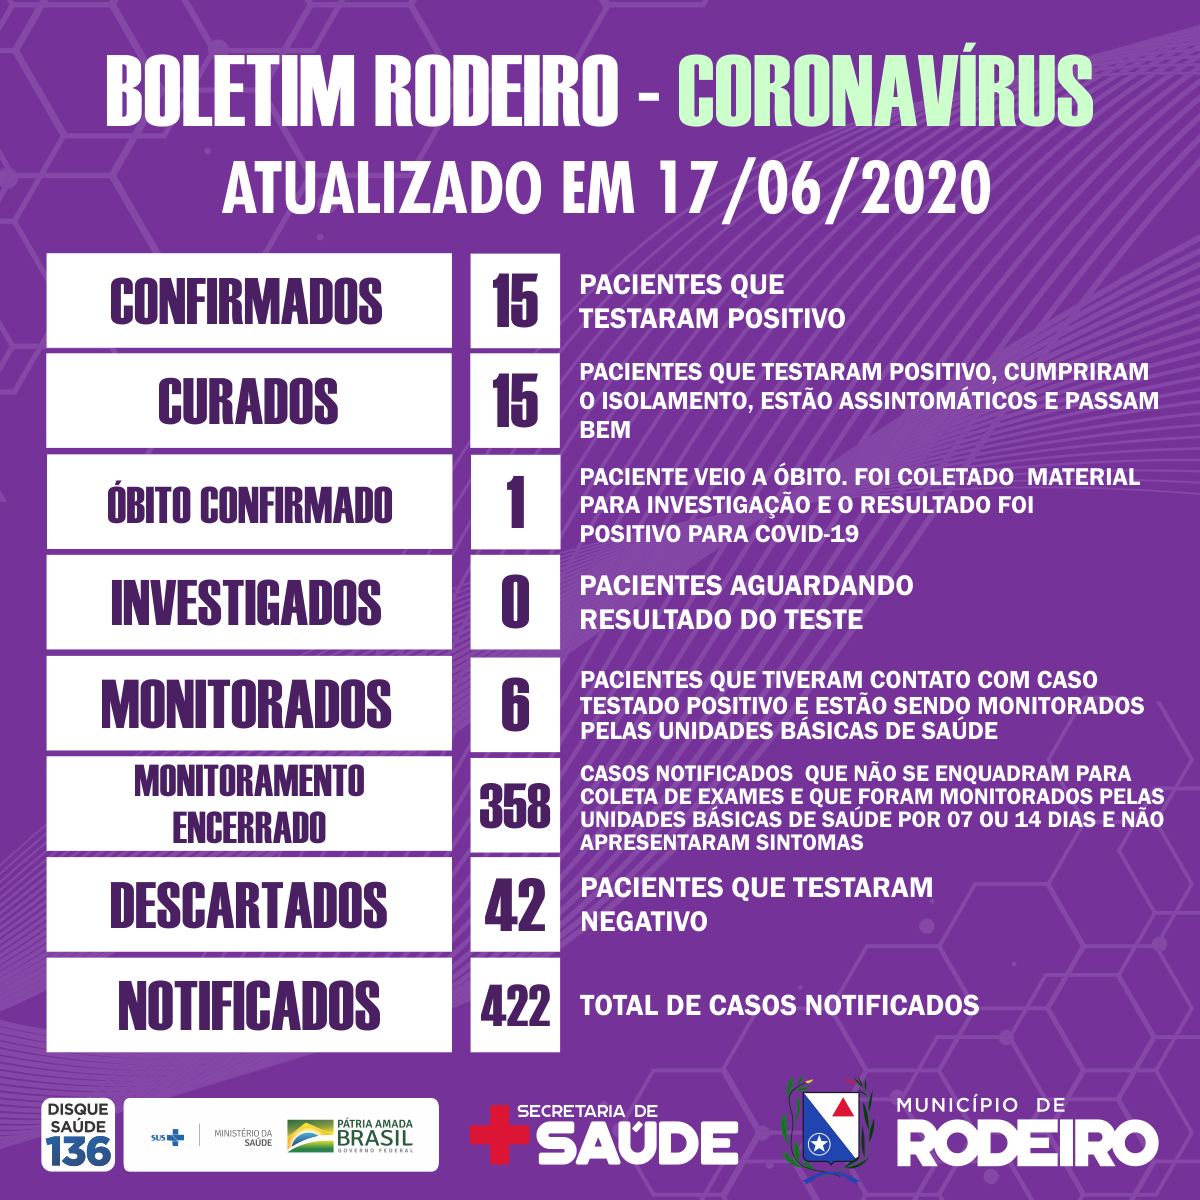 Boletim epidemiológico do Município de Rodeiro coronavírus, atualizado em 17/06/2020